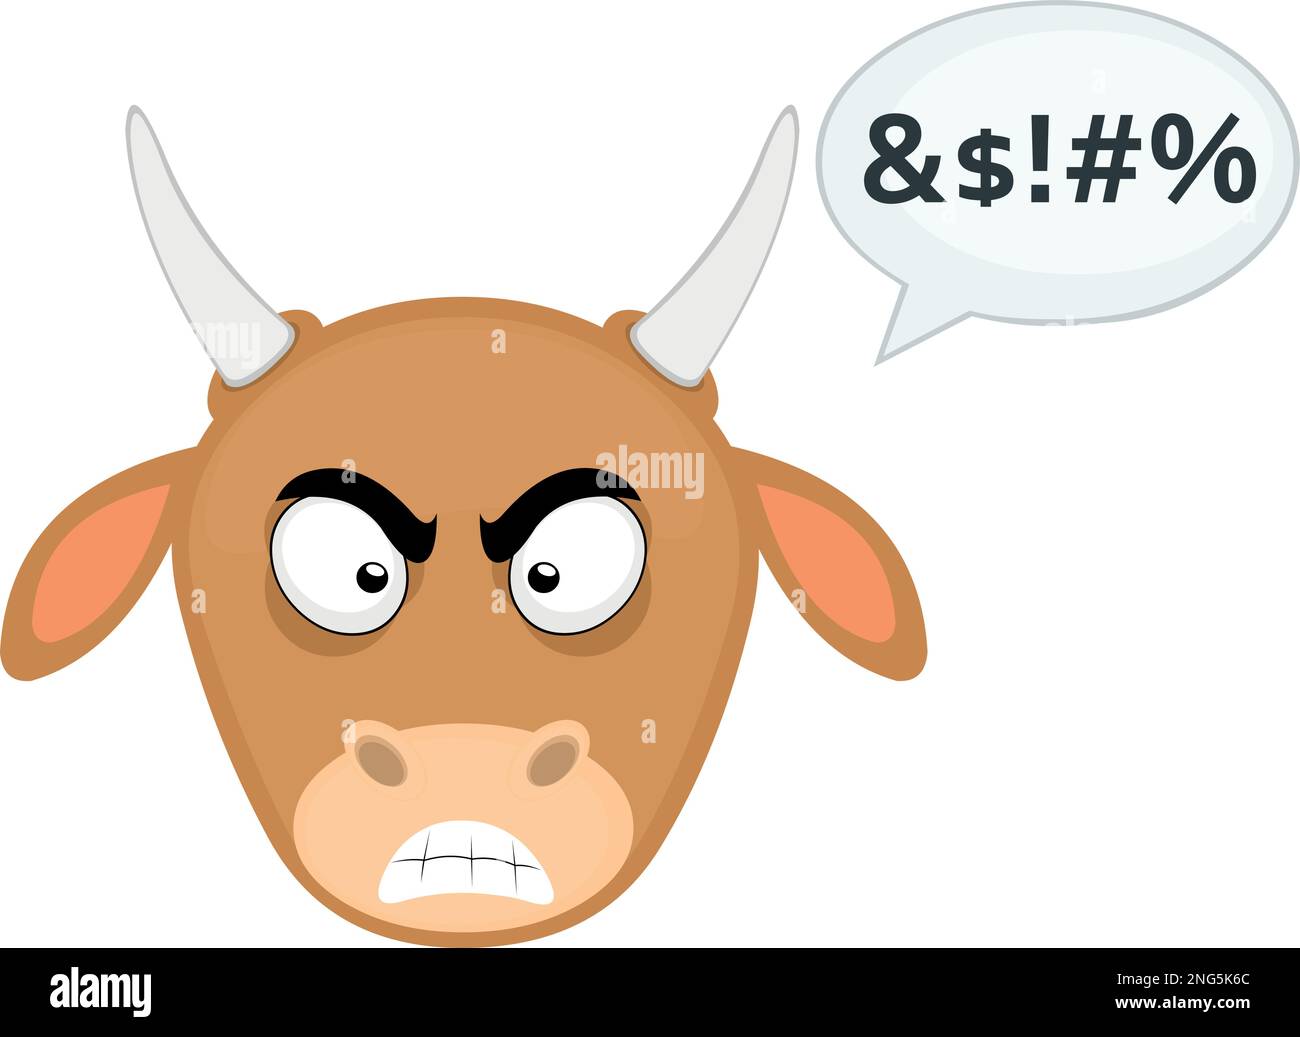 vektorbild eines Kuh-Cartoons mit wütendem Ausdruck, mit einer dialogebase mit beleidigendem Text Stock Vektor